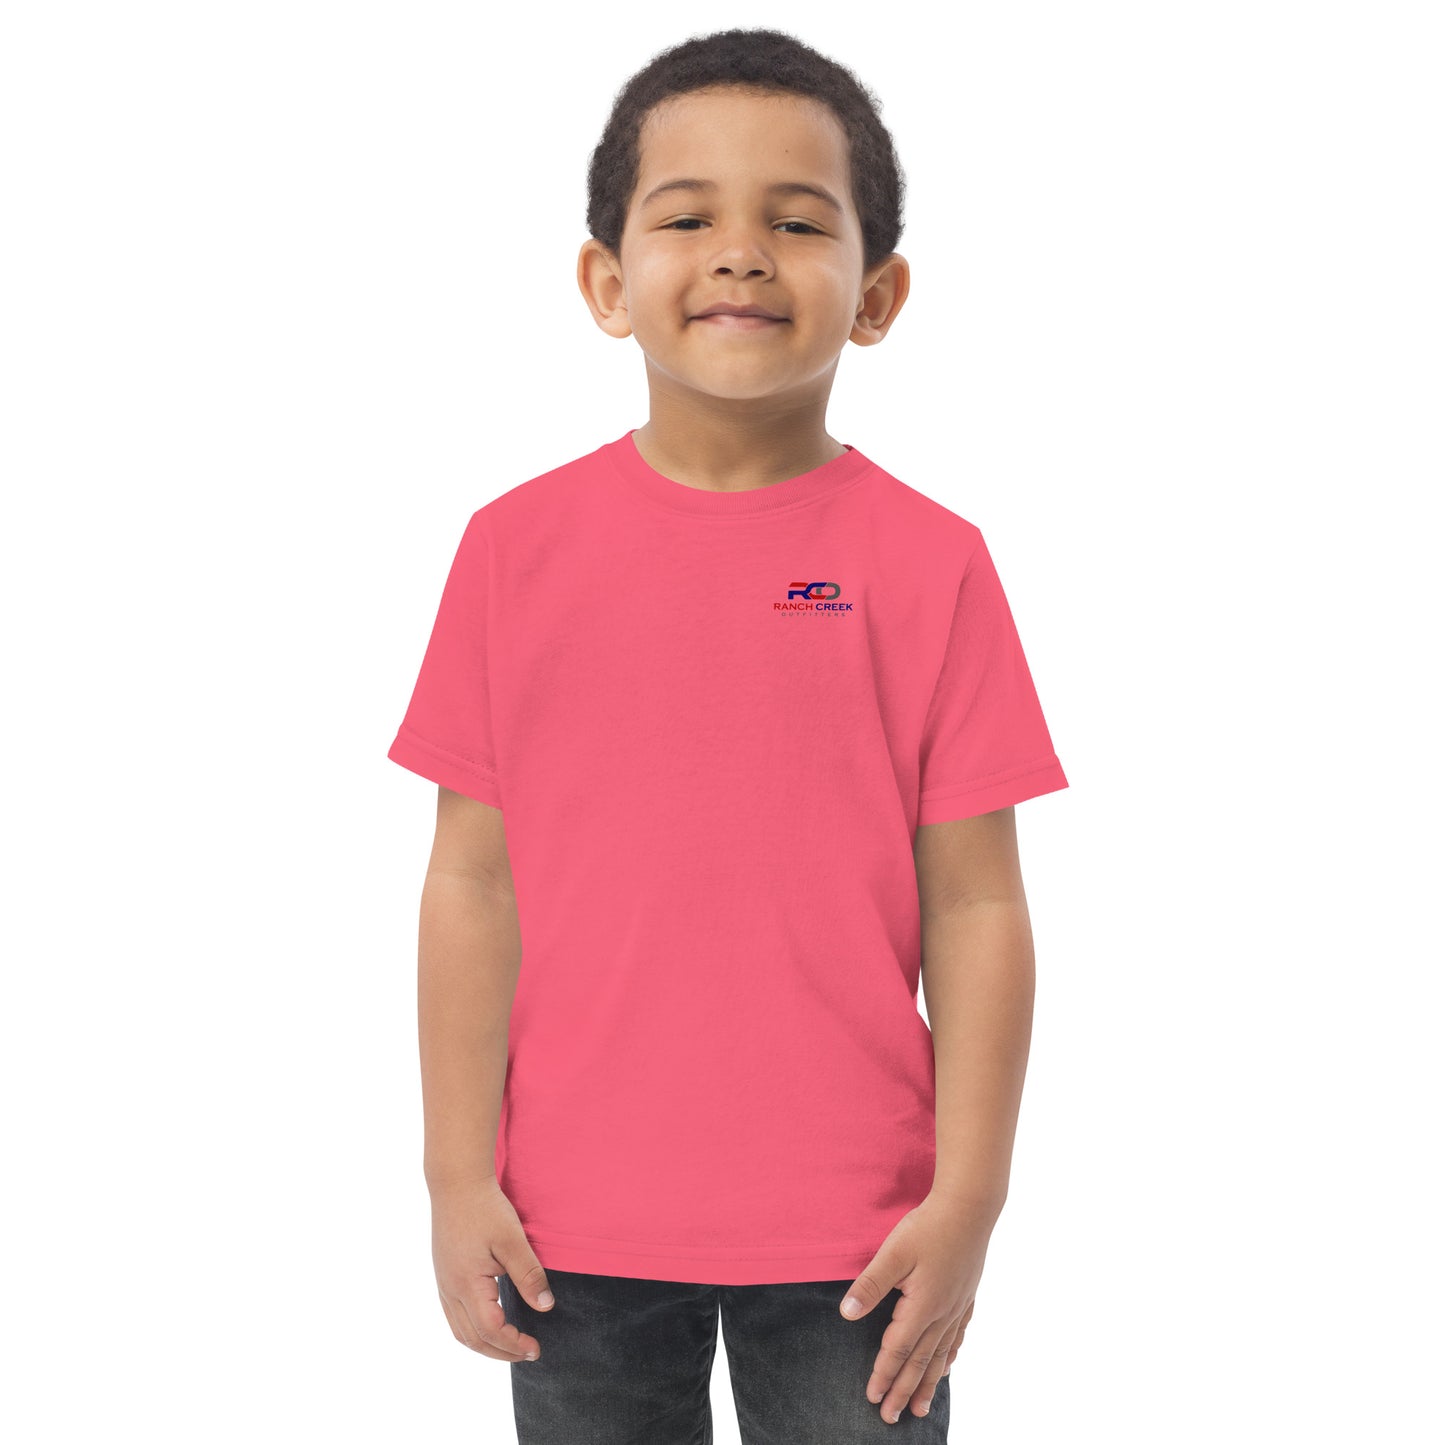 Toddler Dozer jersey t-shirt